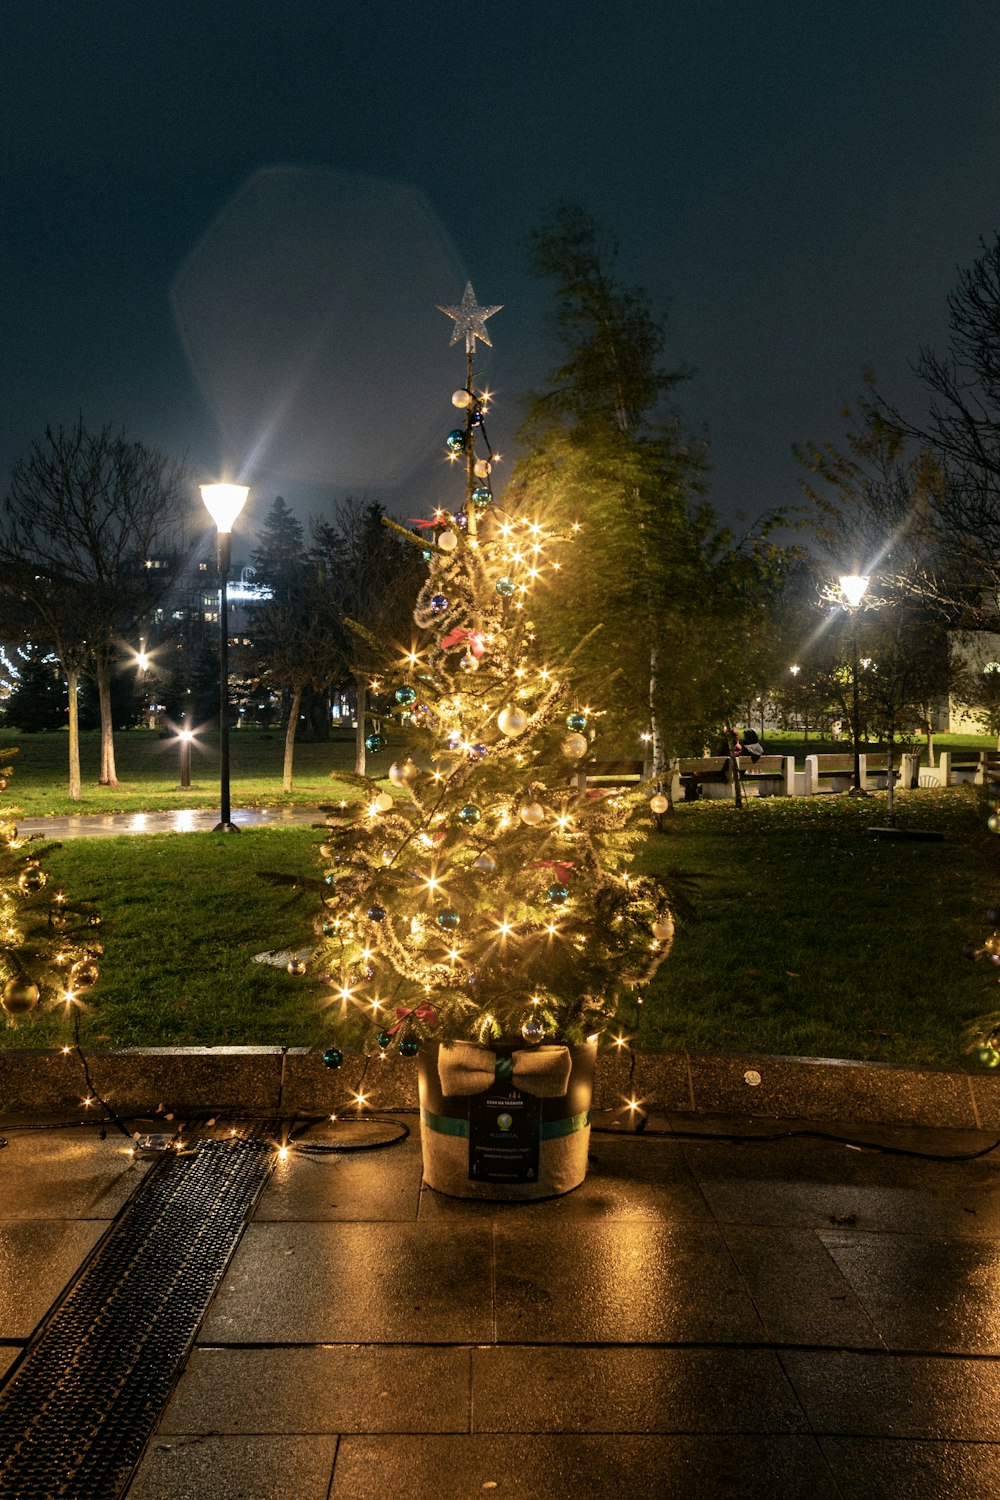 Sapin de Noël vert avec guirlandes lumineuses allumées pendant la nuit